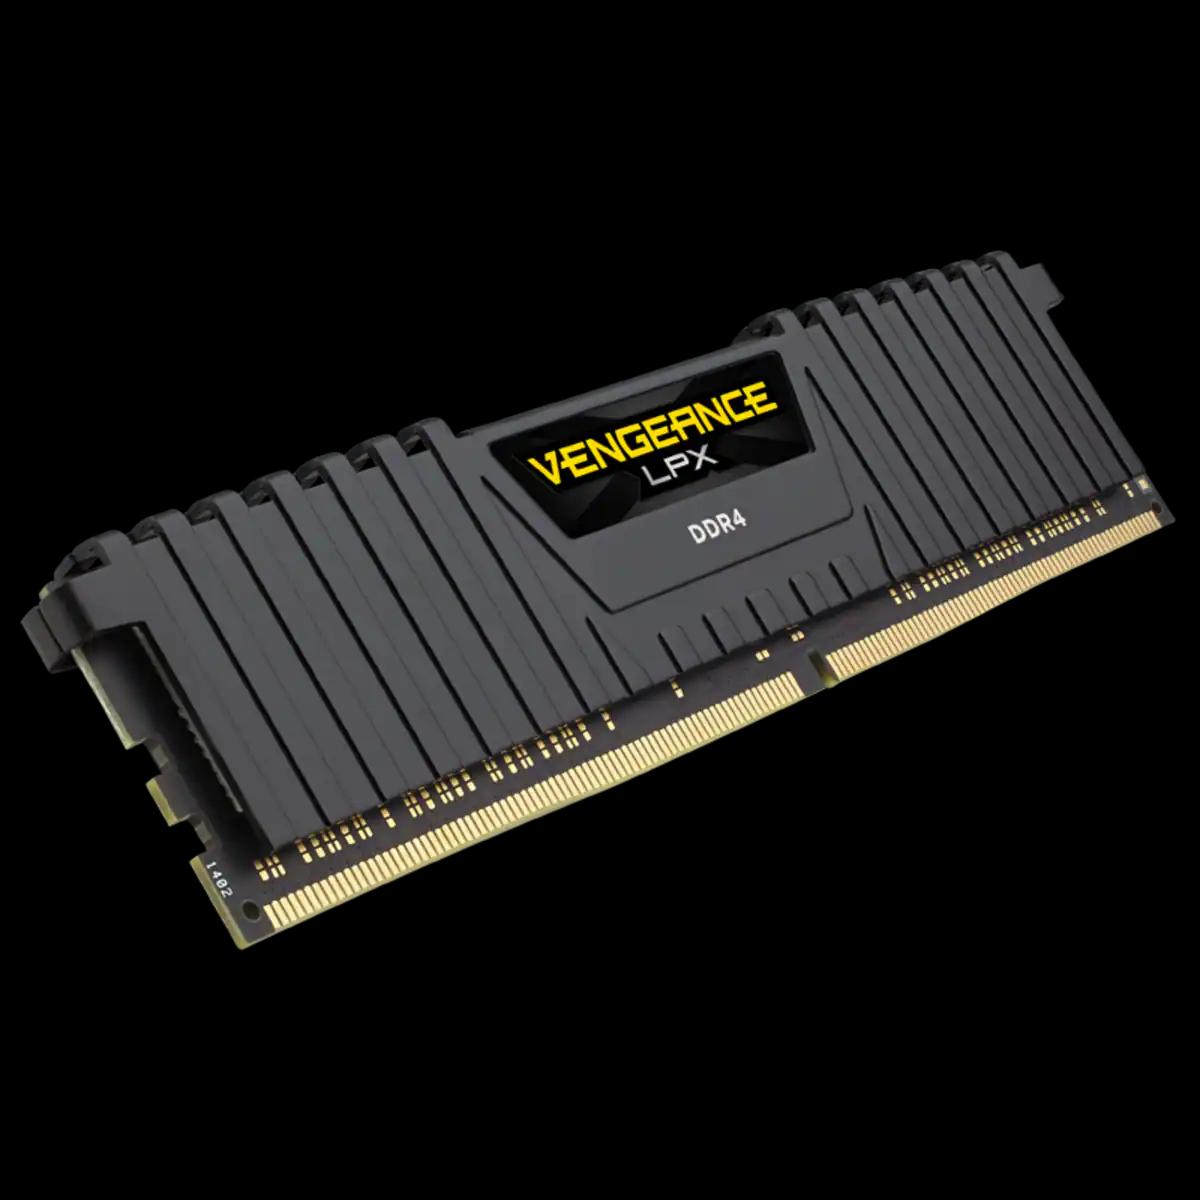 CORSAIR VENGEANCE LPX BLACK 8GB*2 DDR4 3200MHZ